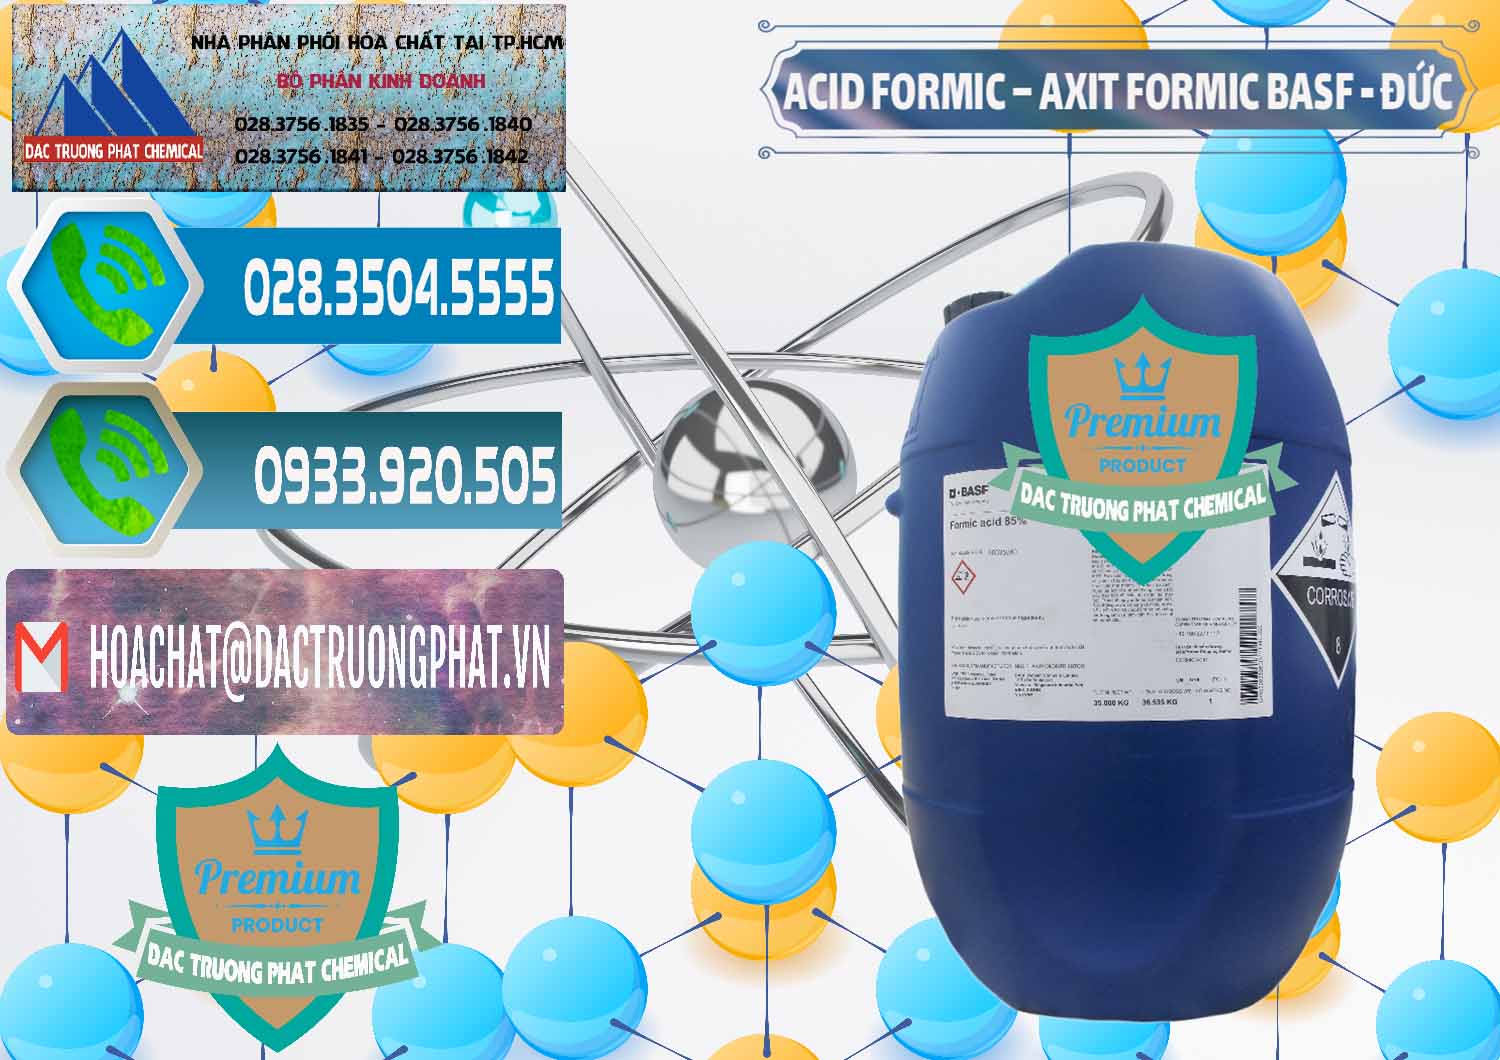 Công ty chuyên bán - cung ứng Acid Formic - Axit Formic BASF Đức Germany - 0028 - Cty cung cấp & phân phối hóa chất tại TP.HCM - congtyhoachat.net